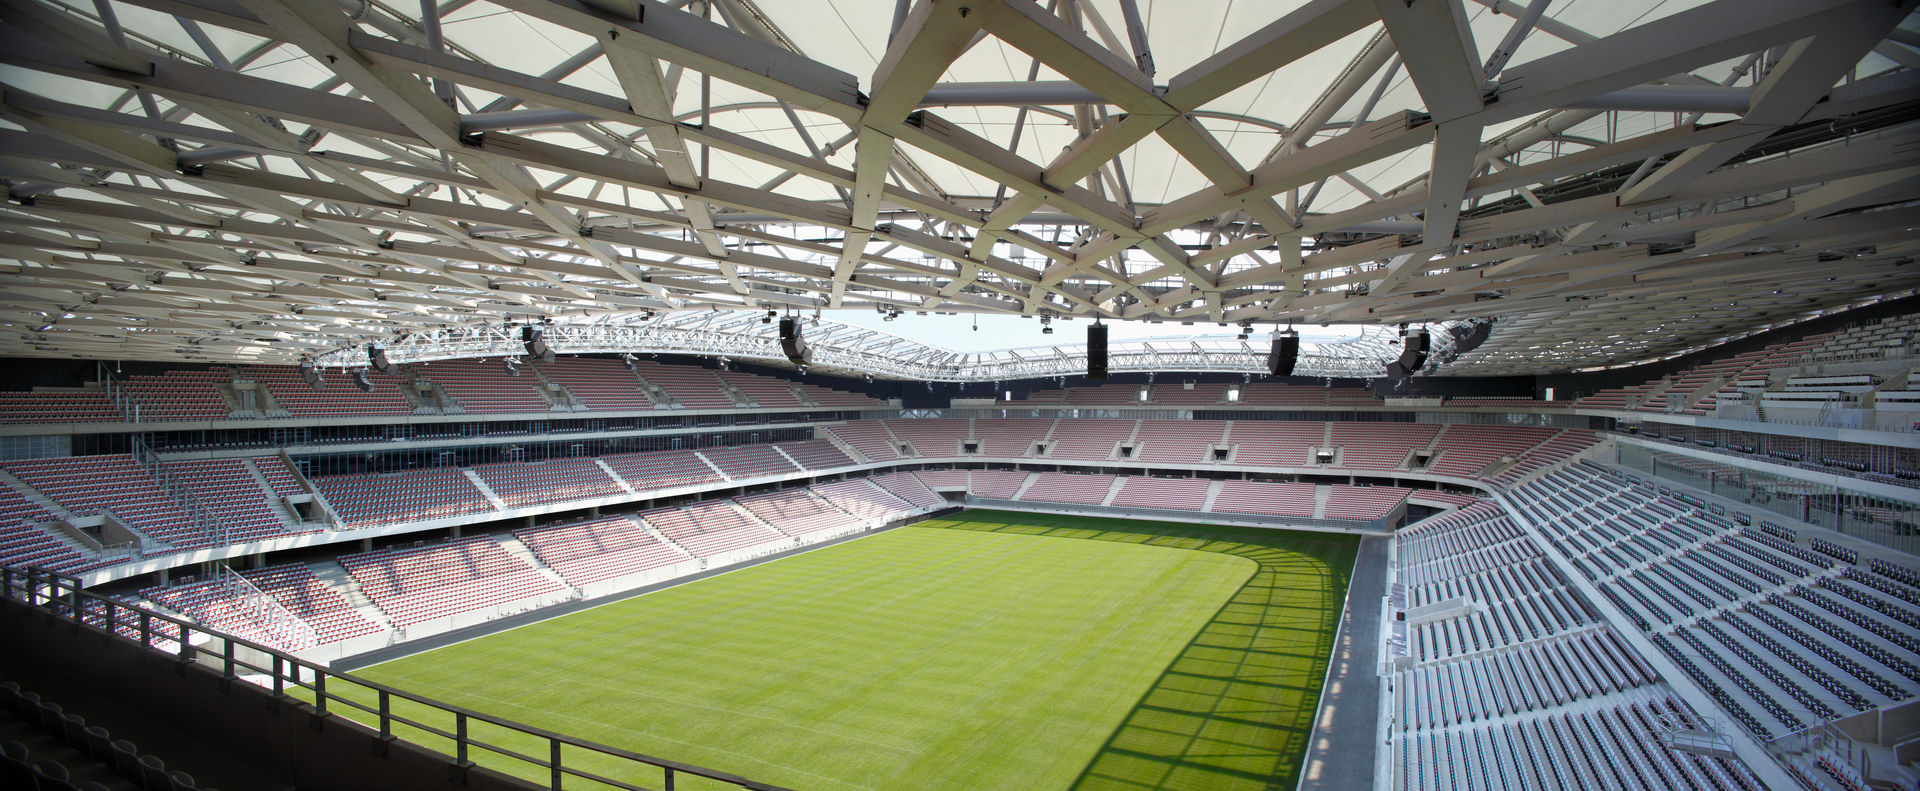 Stade Allianz Riviera, Wilmotte & Associés Wilmotte & Associés Commercial spaces Stadiums